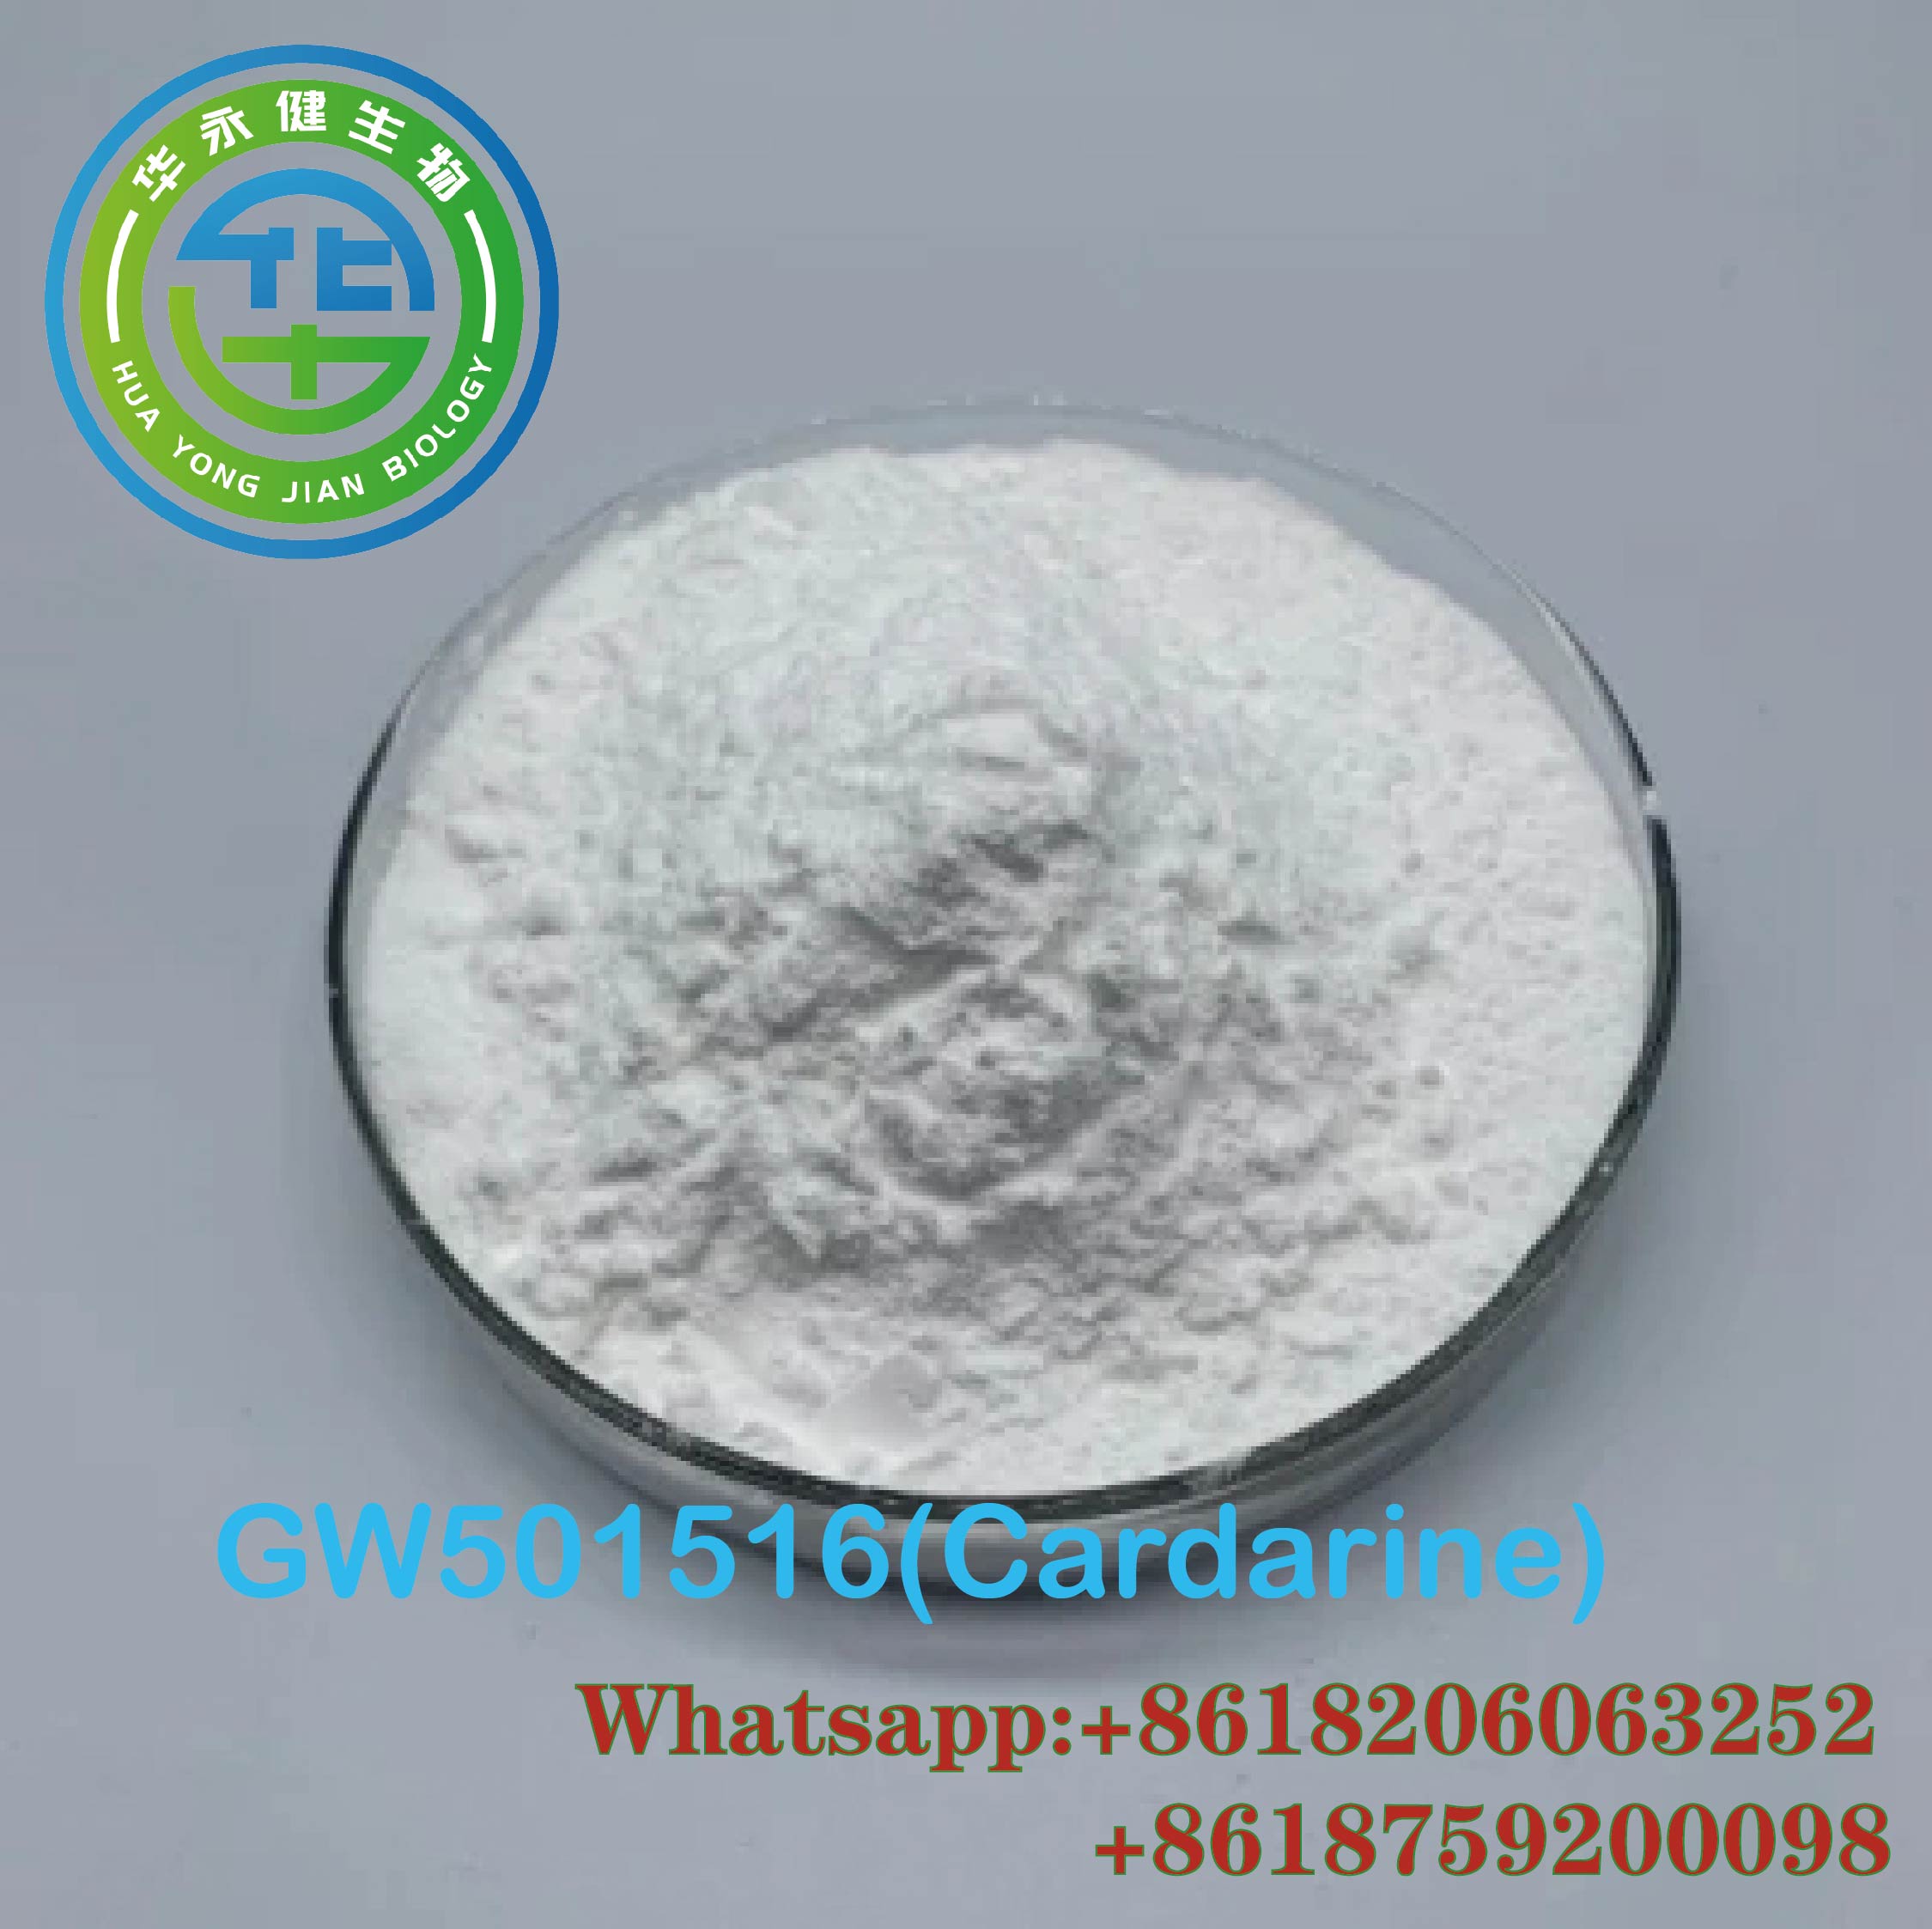 GW-501516 Powder Pharmaceutical Grade SARMs Cardarine CAS 317318-70-0 For Fat Loss